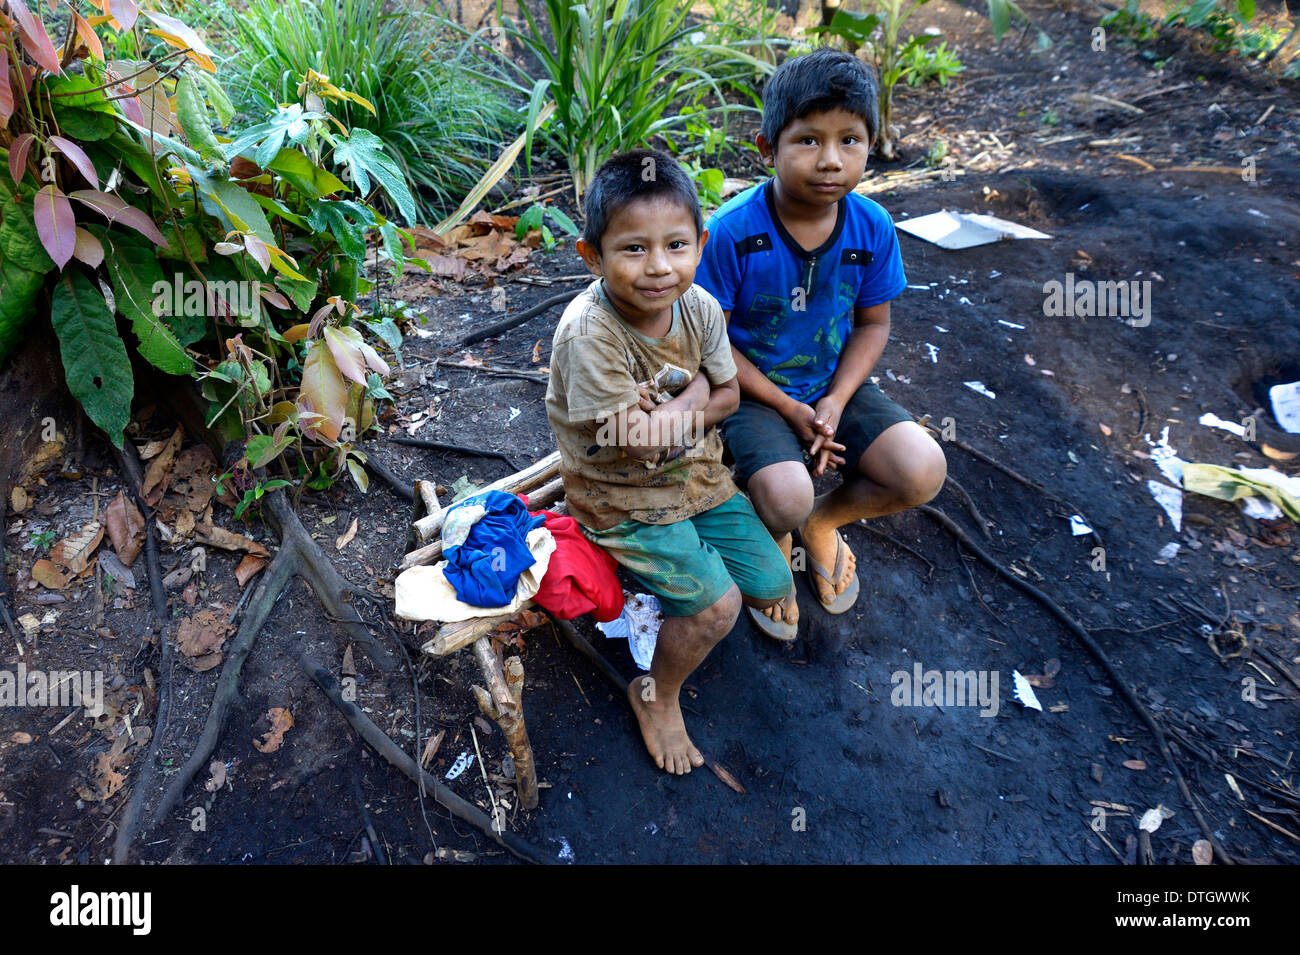 Zwei einheimische jungen im Dorf der Xavantes Menschen, Tres Rios in der Nähe von der Mission der Sangradouro, Primavera do Leste Stockfoto